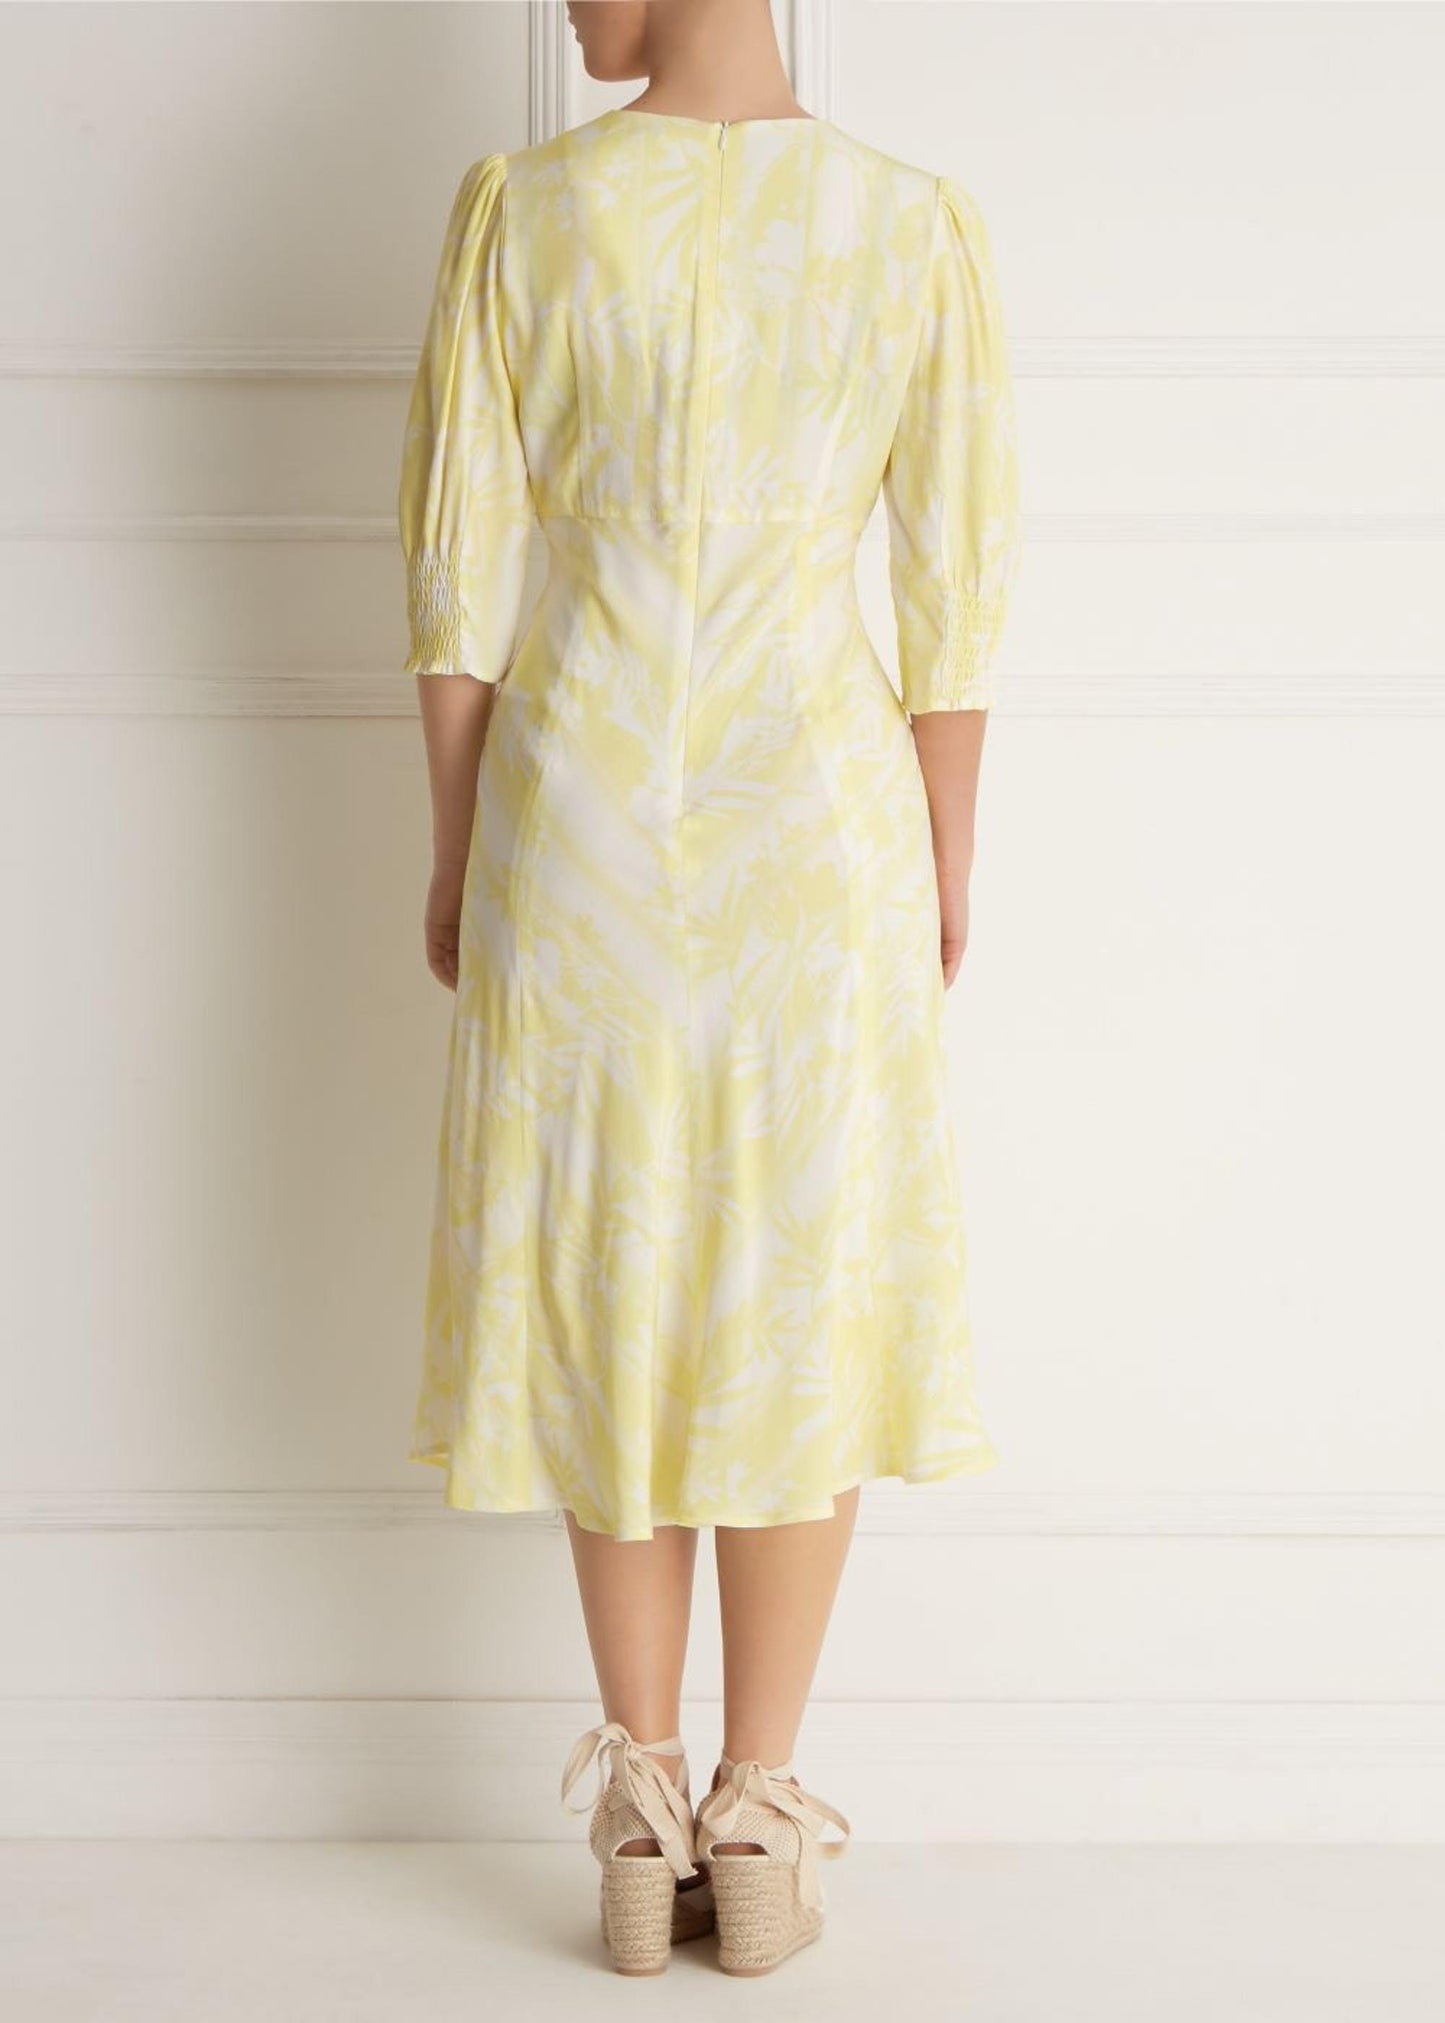 FENN WRIGHT MANSON PETITE CITRON WOMEN OLIVE DRESS LEMON colour UK18(petite)